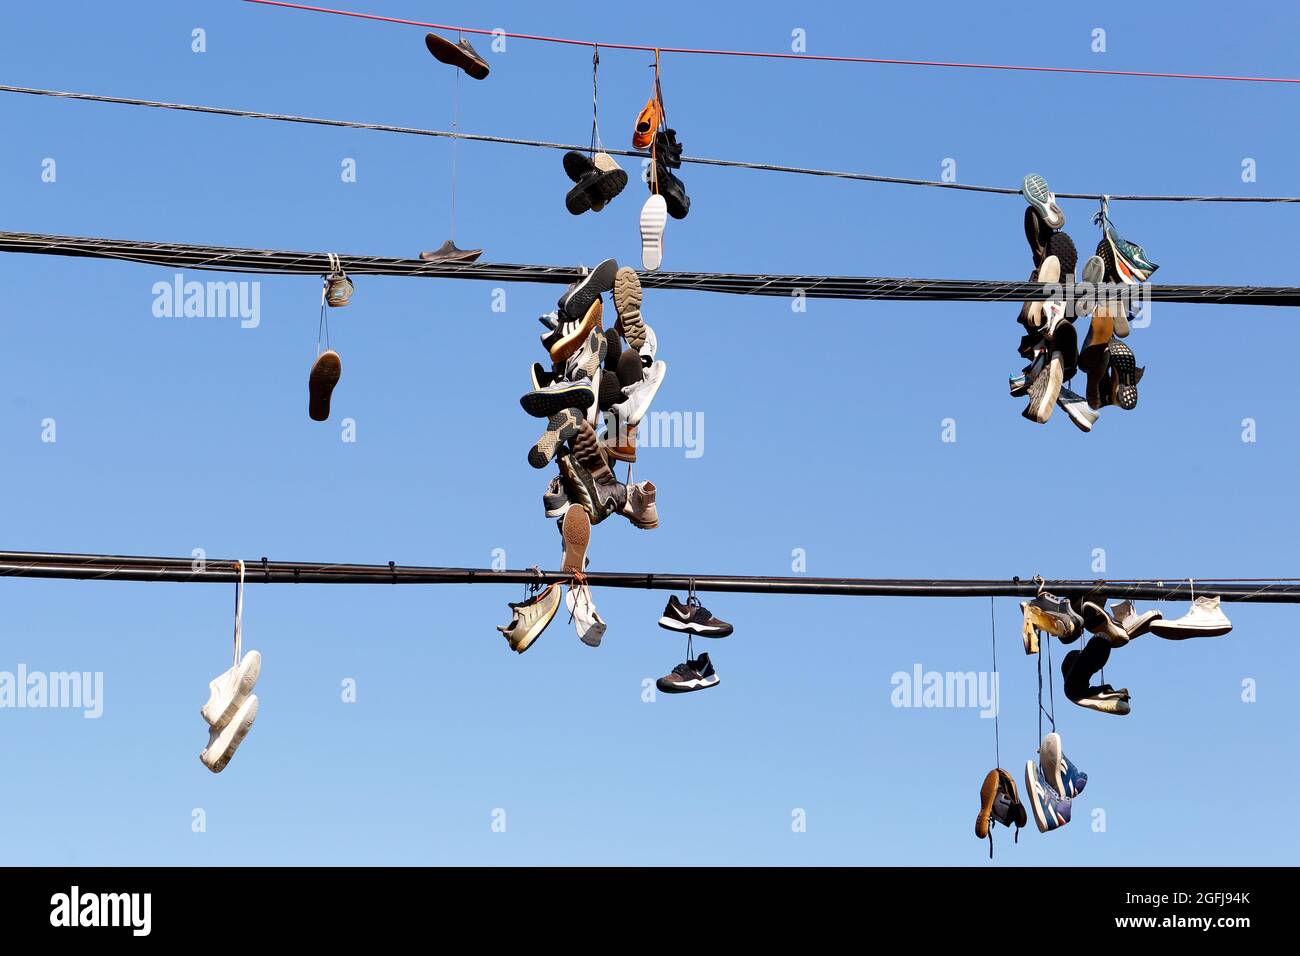 shoefiti, sneakers appese sul filo del telefono contro un cielo blu soleggiato; sneakers legati insieme e gettati sopra una linea elettrica. Foto Stock